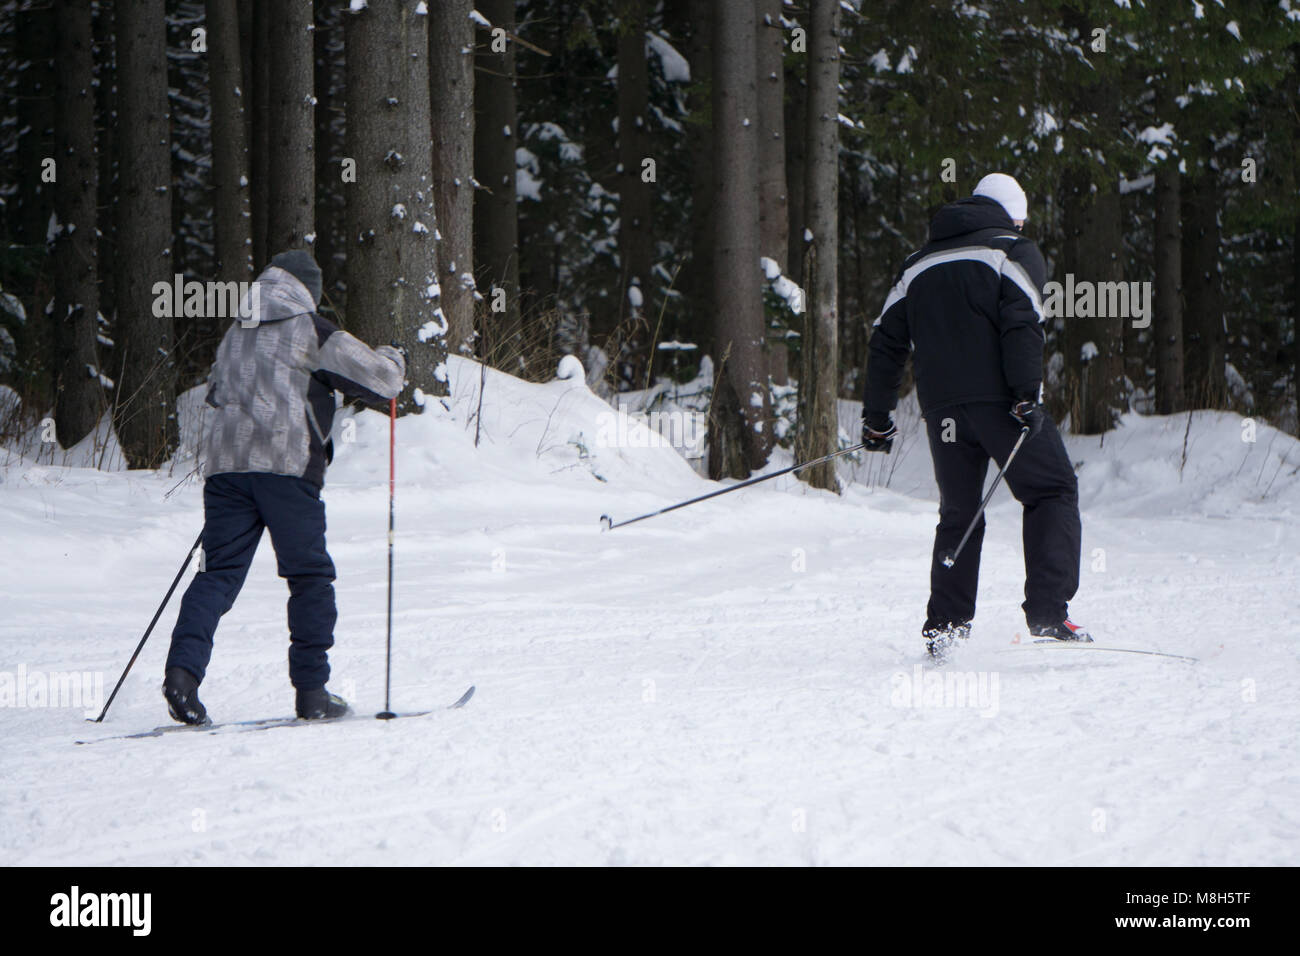 Skiing, winter, ski lesson - skiers on mountainside Stock Photo